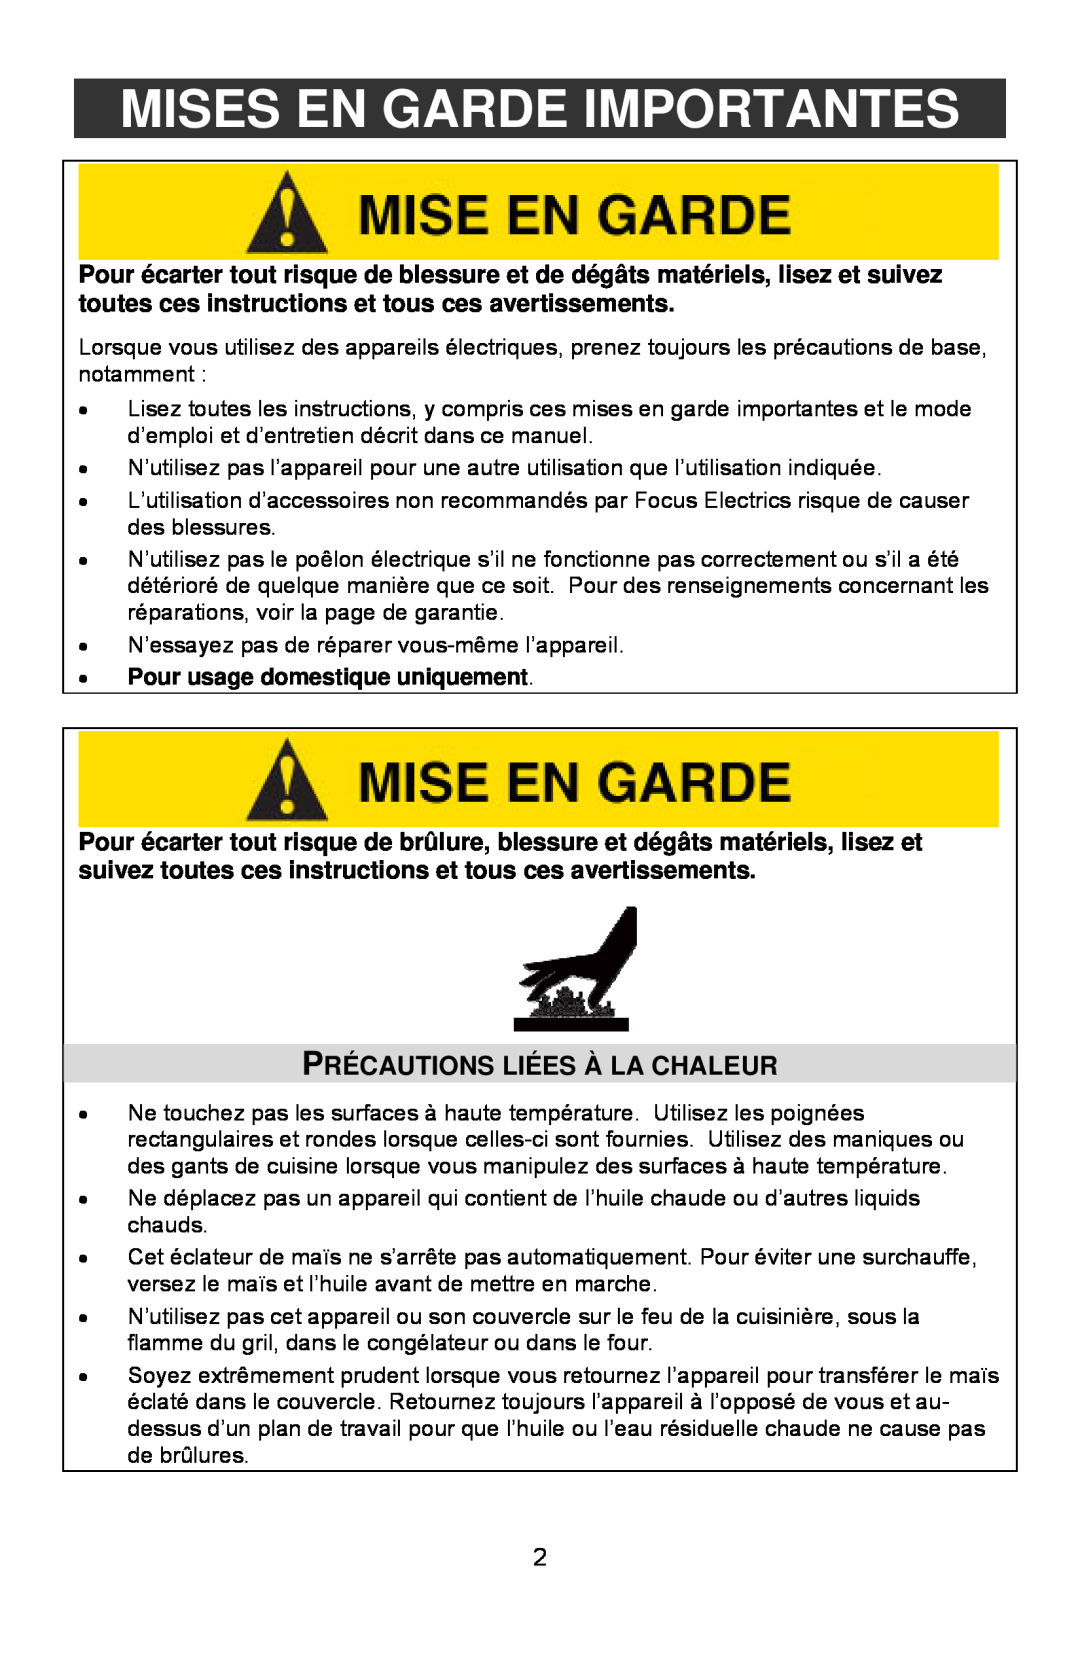 West Bend 82306, L5557B instruction manual Mises En Garde Importantes, Précautions Liées À La Chaleur 